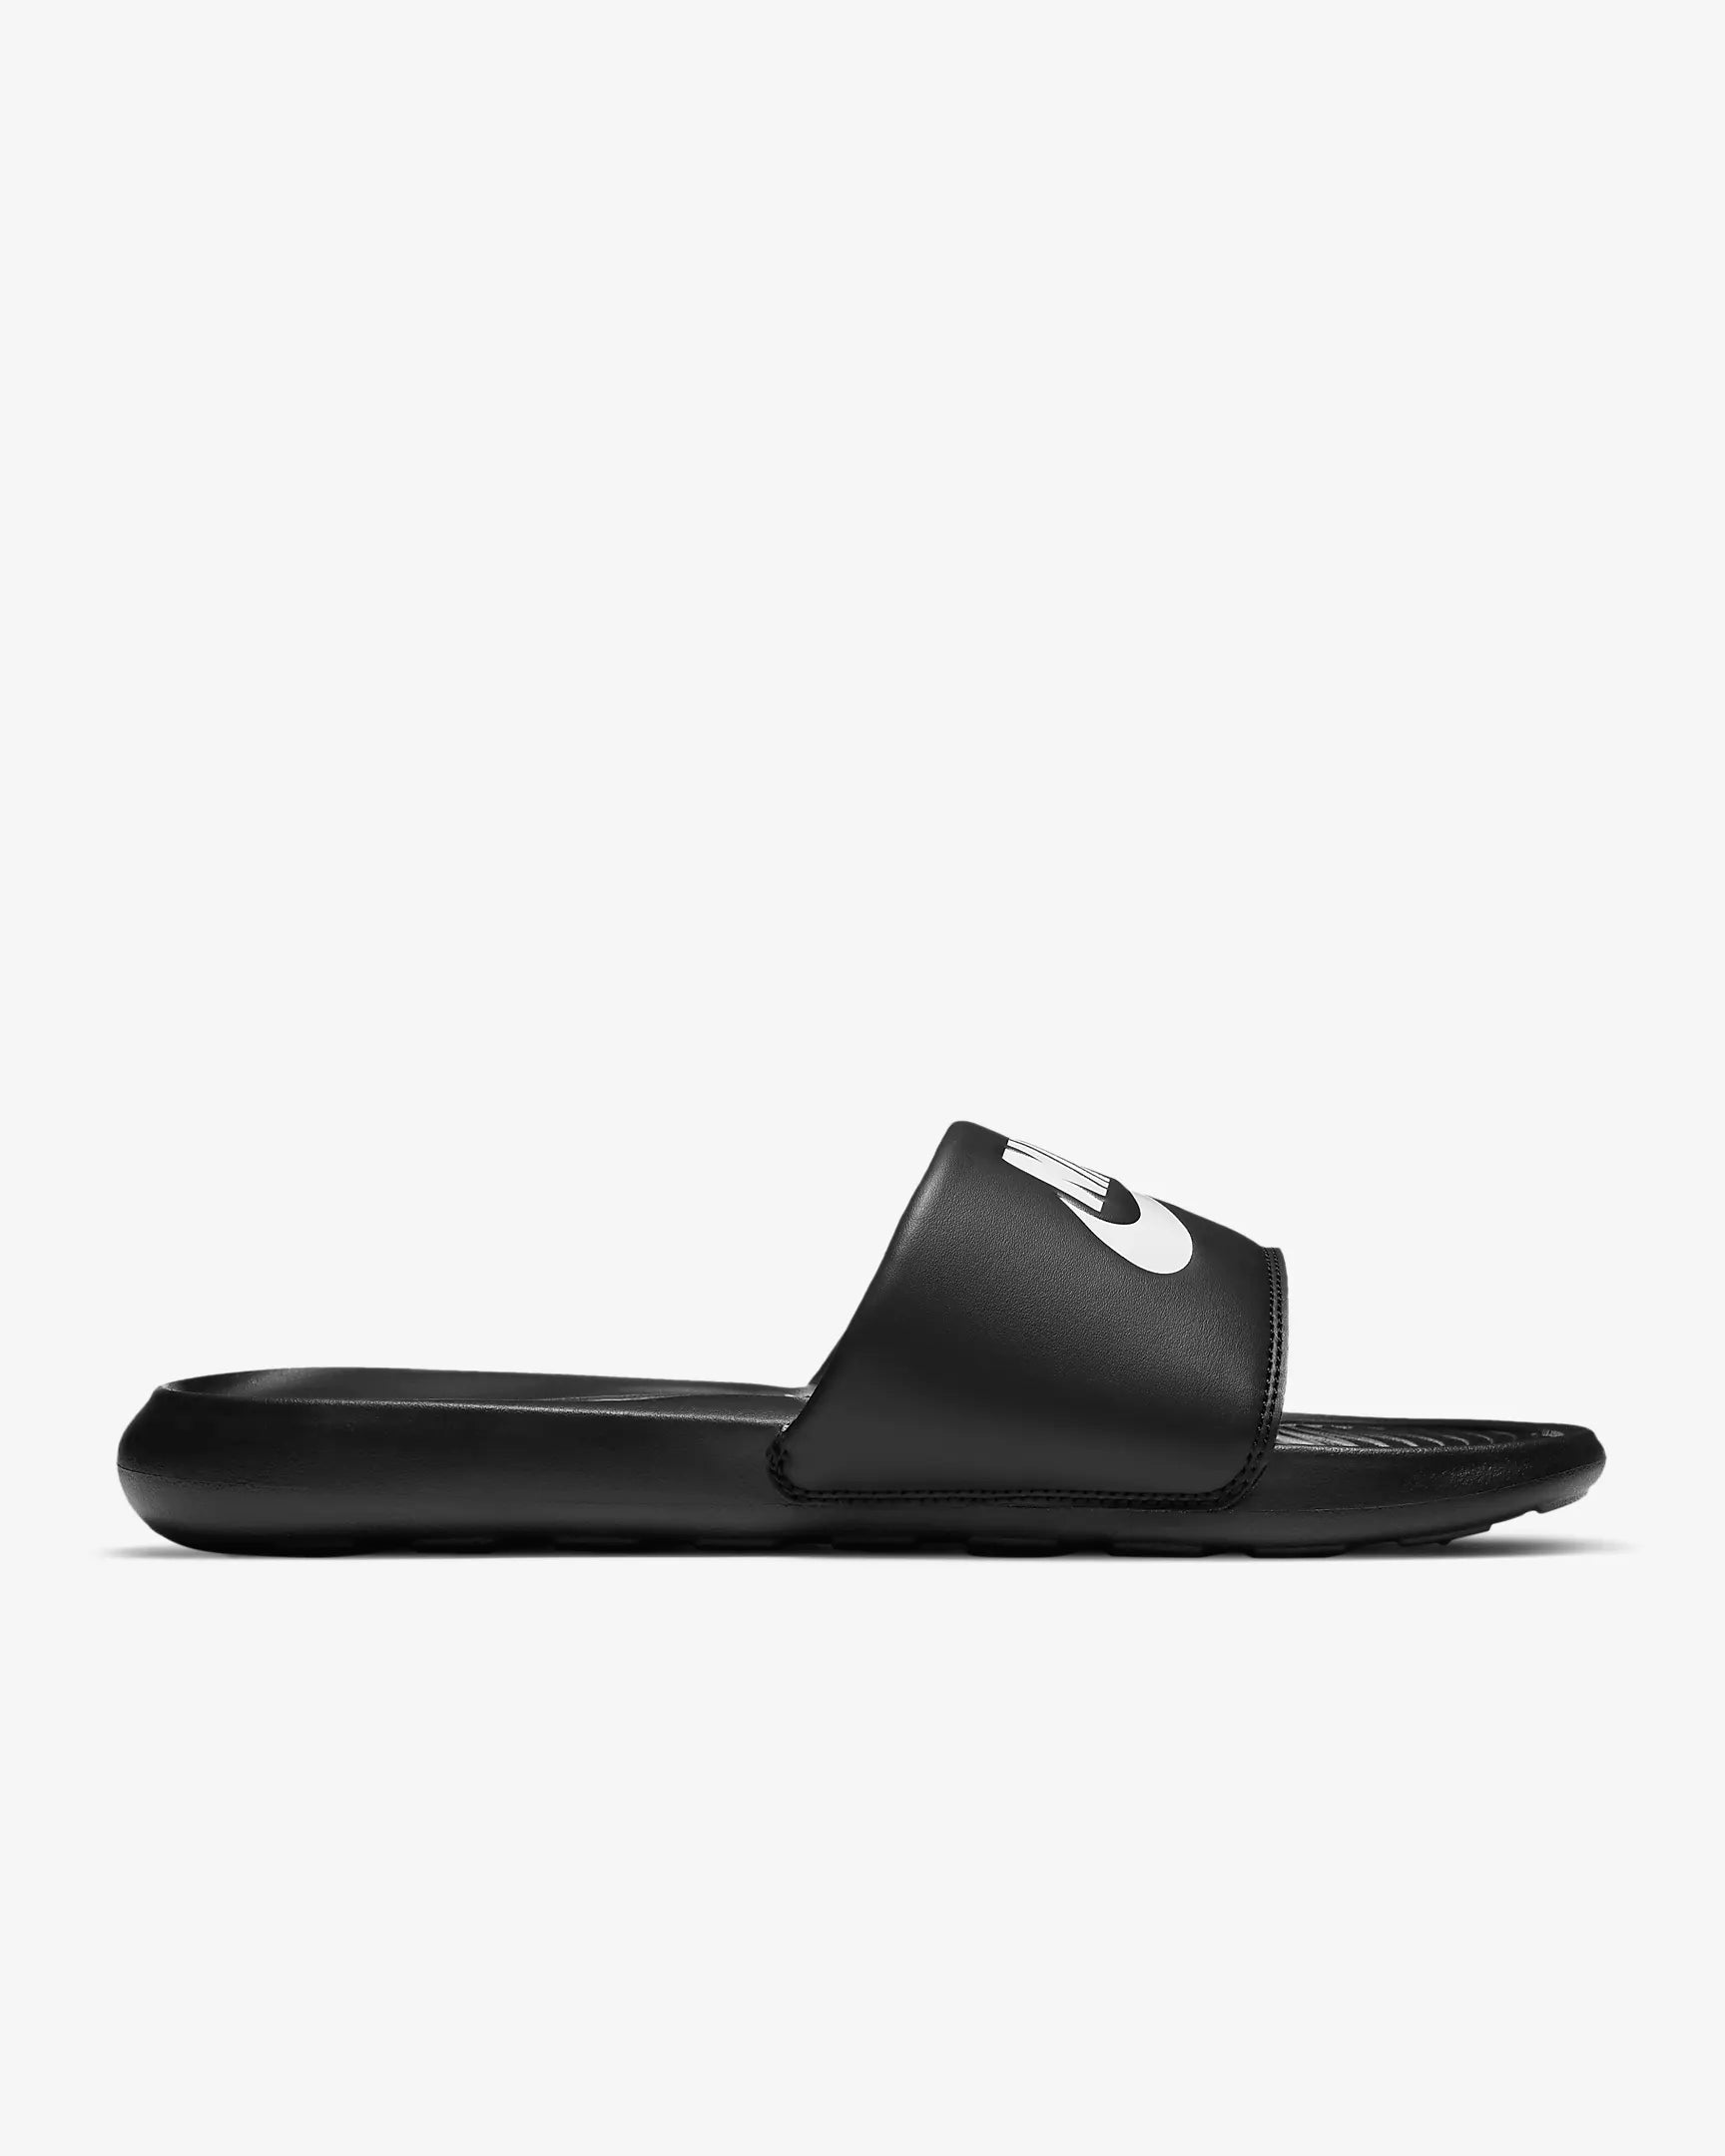 Nike Victori One Slide CN9675 002